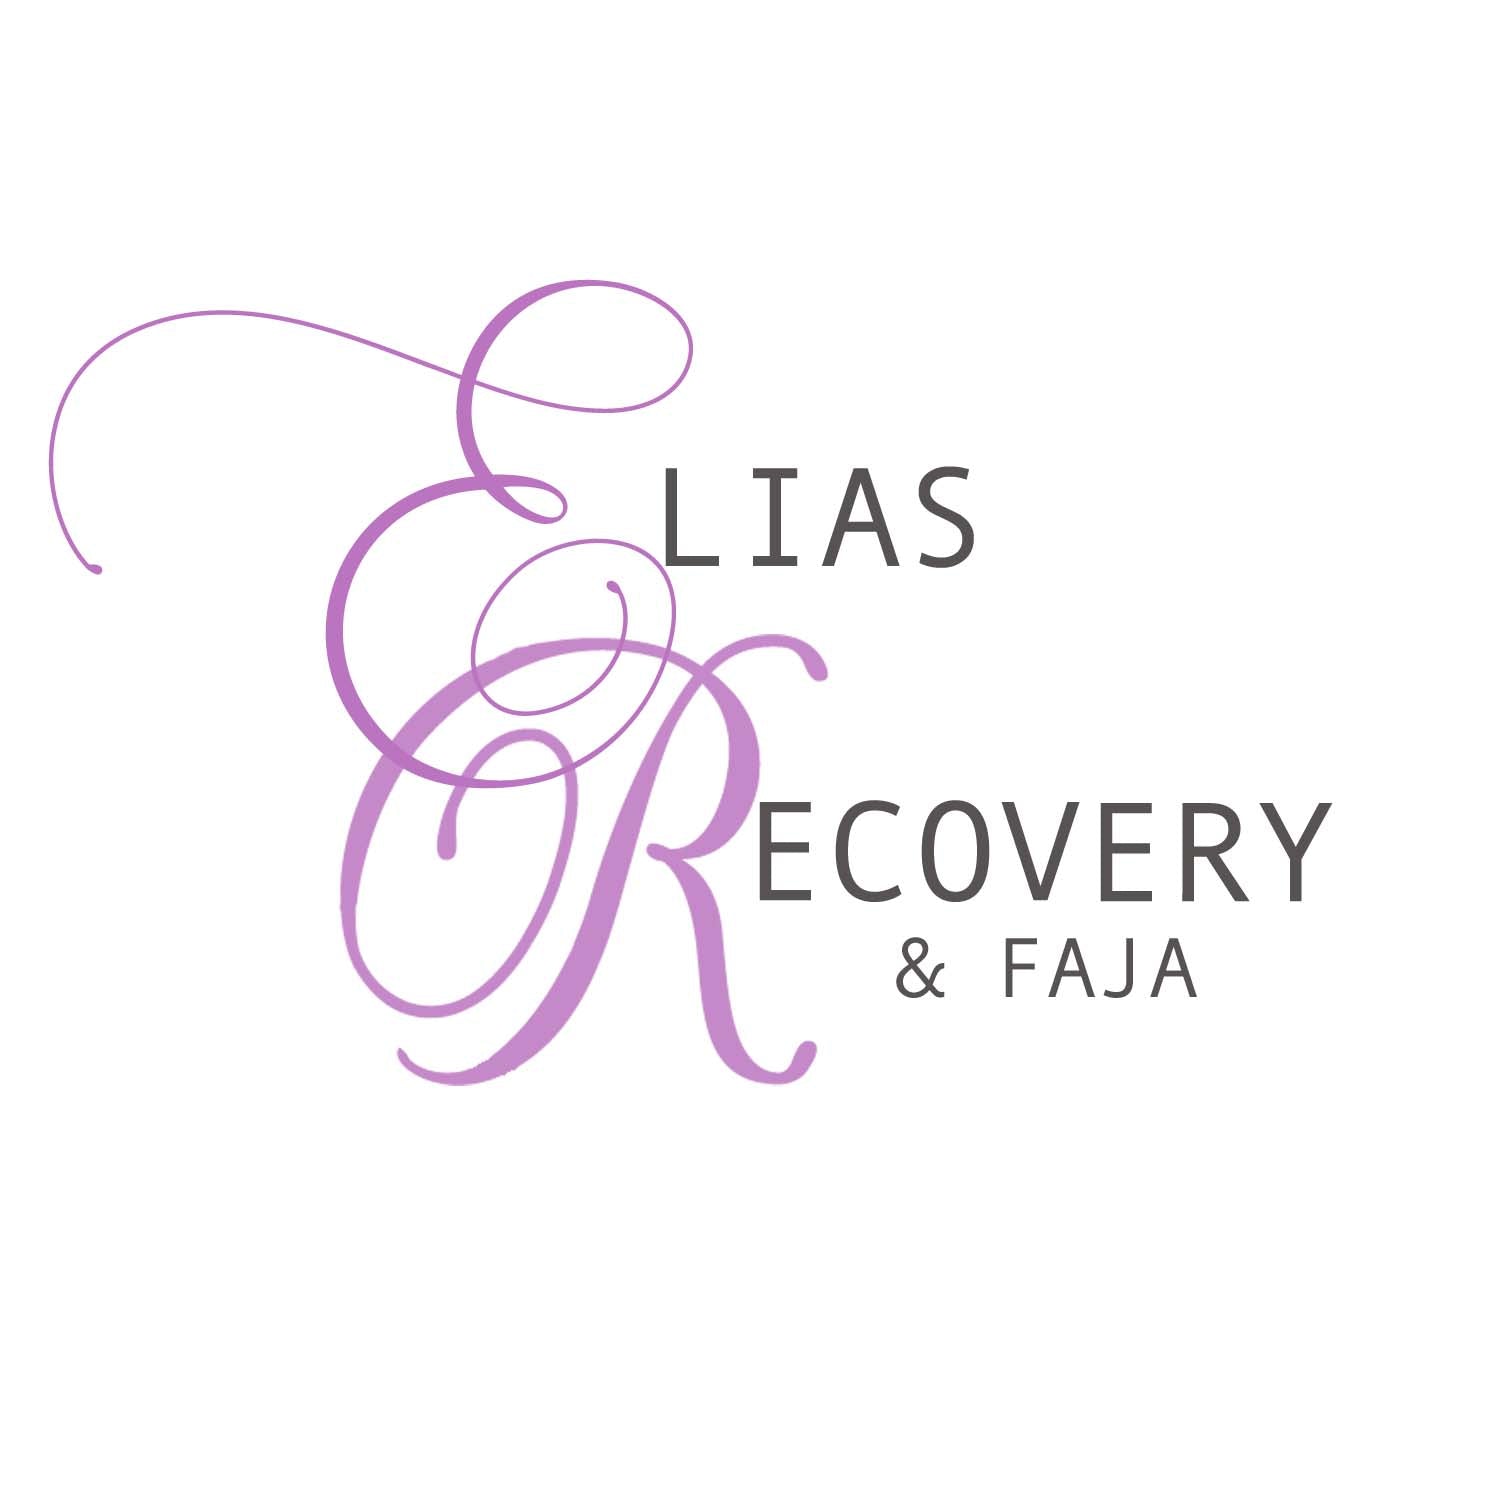 Elias Recovery and Faja